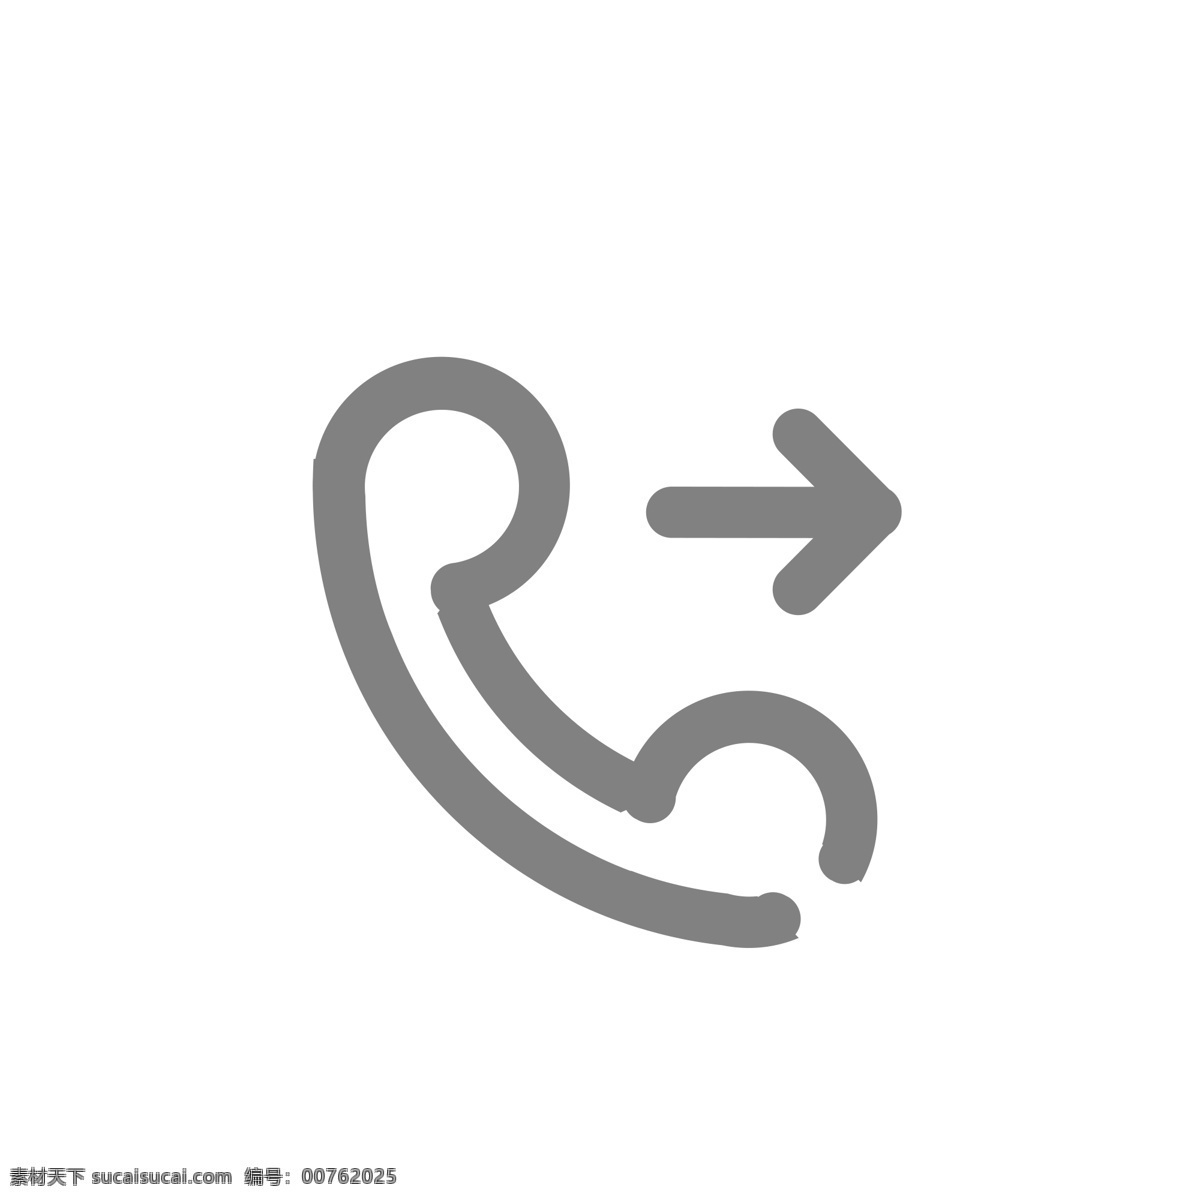 卡 通电话 符号 免 抠 图 电话符号 通讯电话 电脑标识 ui应用图标 卡通图案 卡通插画 网页图标 电脑图标 网络图标